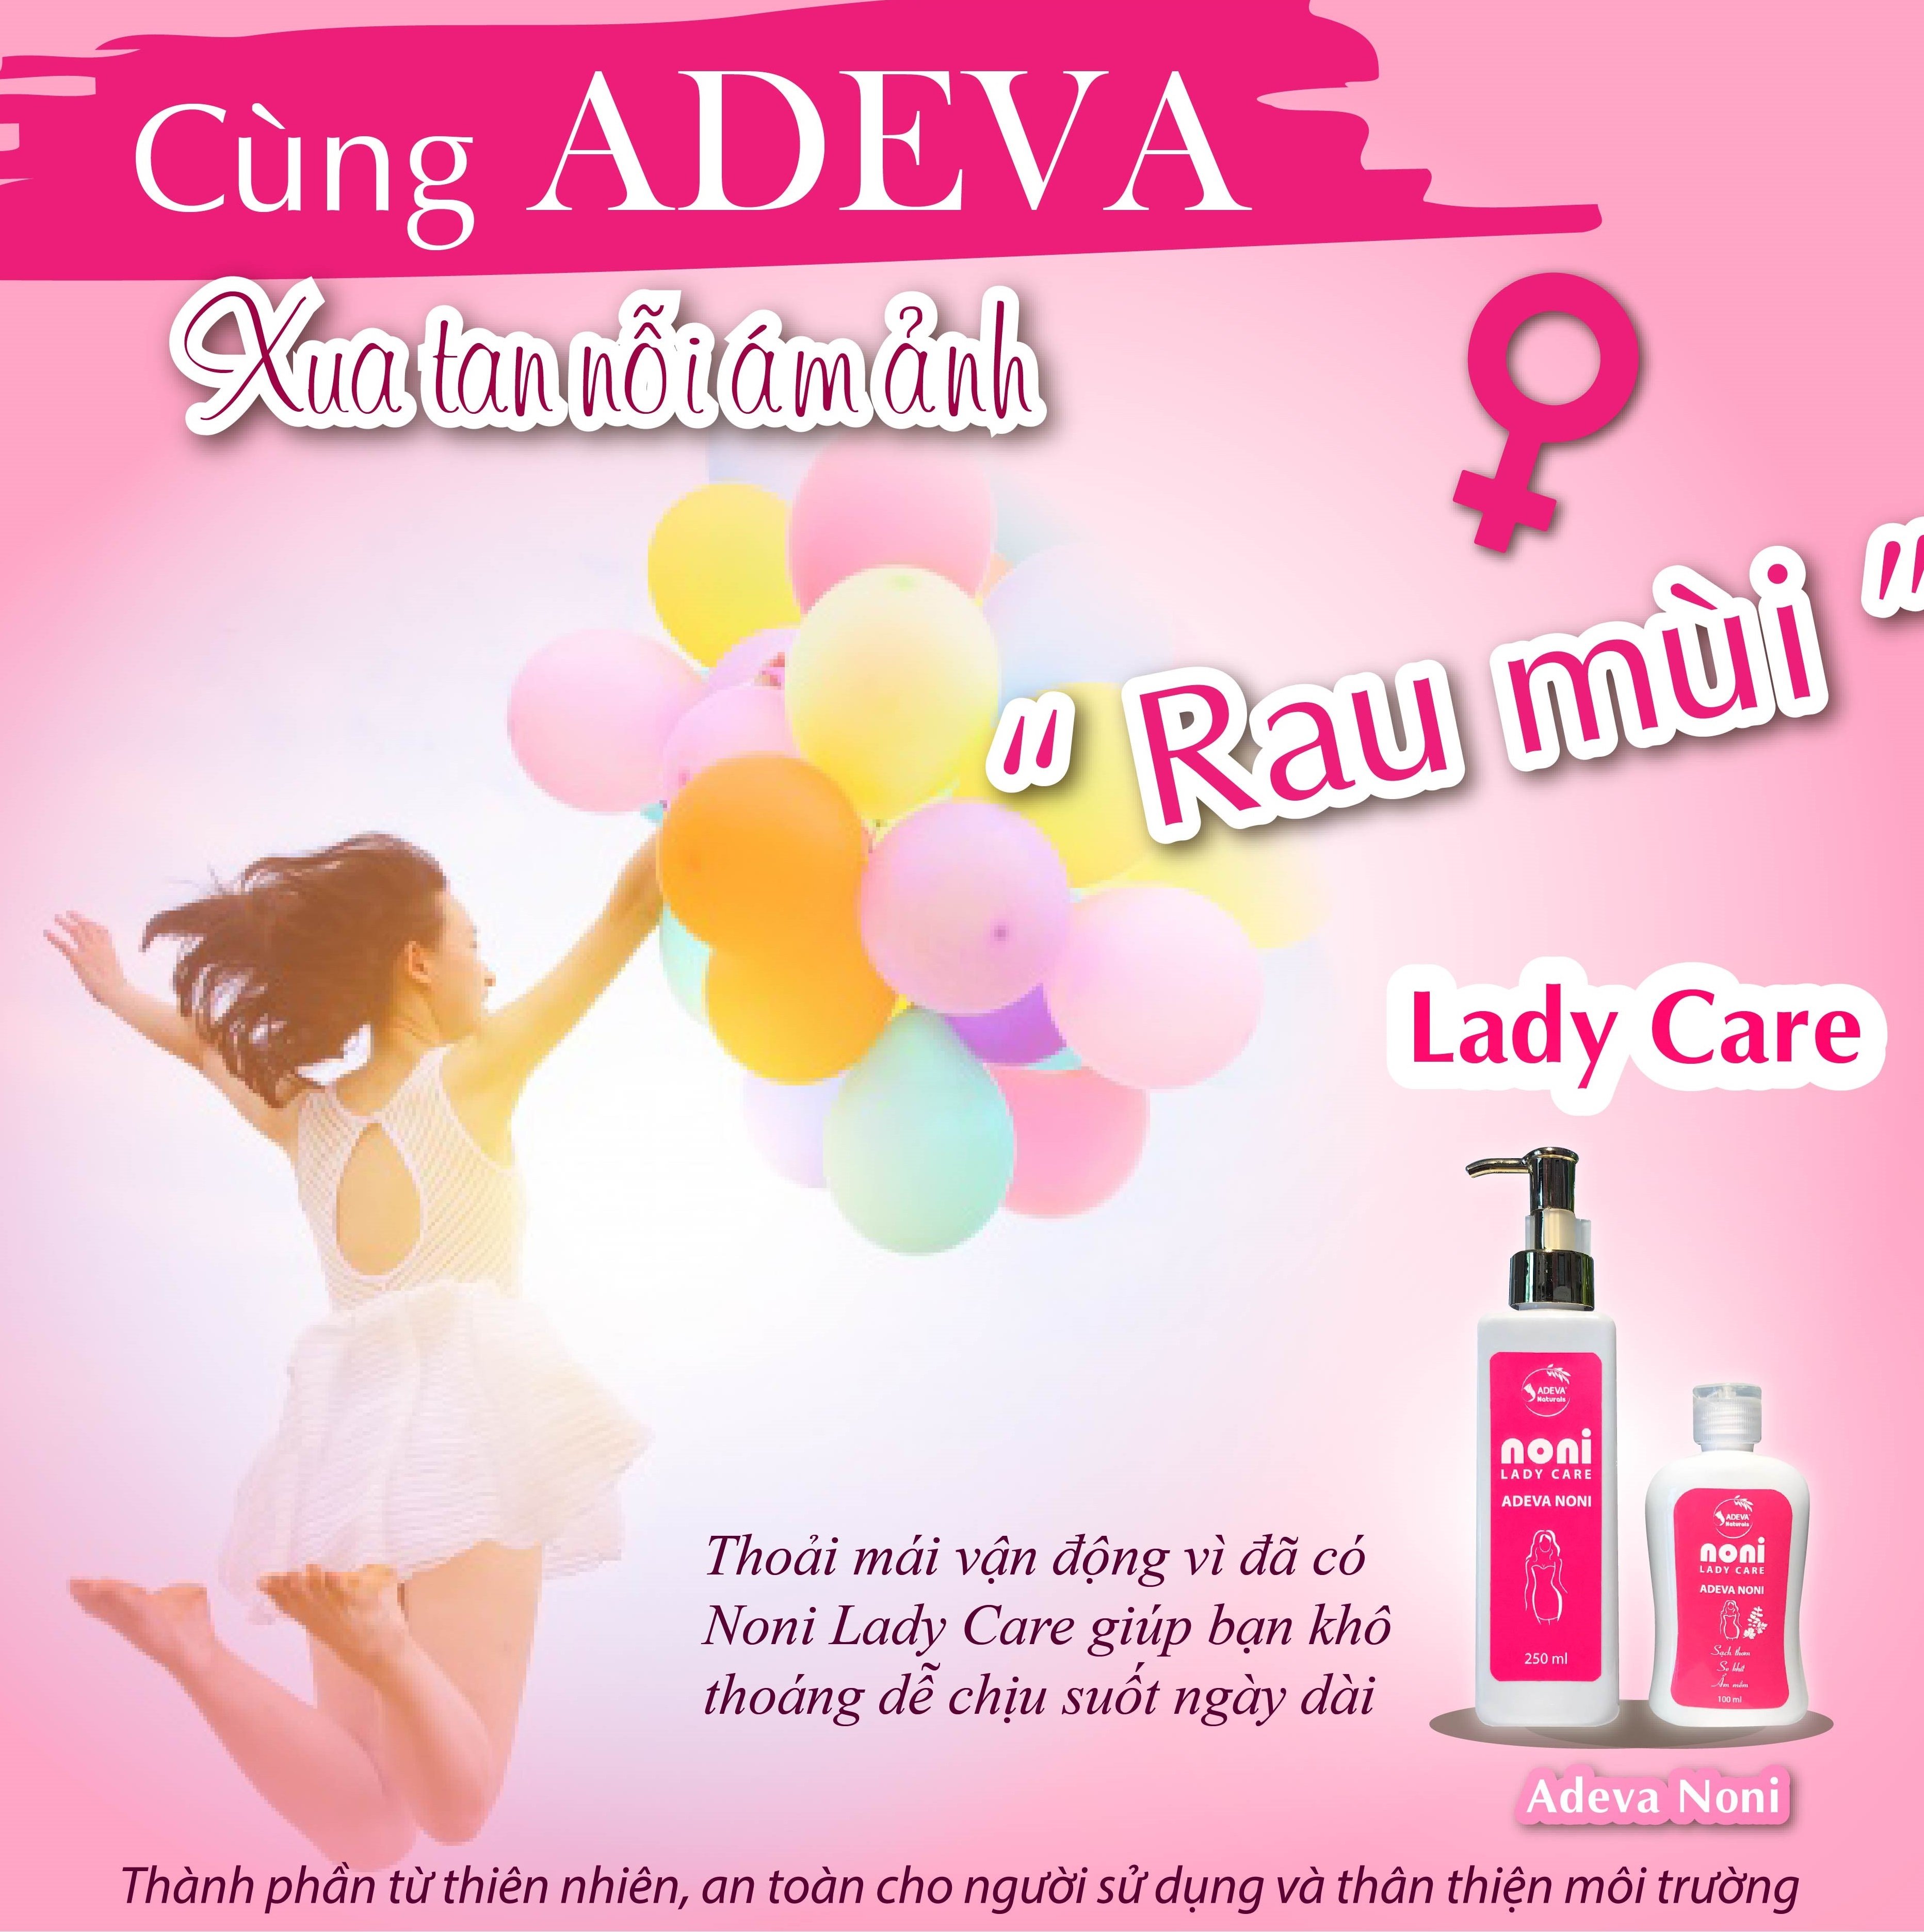 Dung dịch vệ sinh phụ nữ từ thảo dược thiên nhiên Adeva Noni - Sạch the mát, khử mùi, giảm viêm nhiễm phụ khoa, an toàn tuyệt đối cho cô bé của bạn